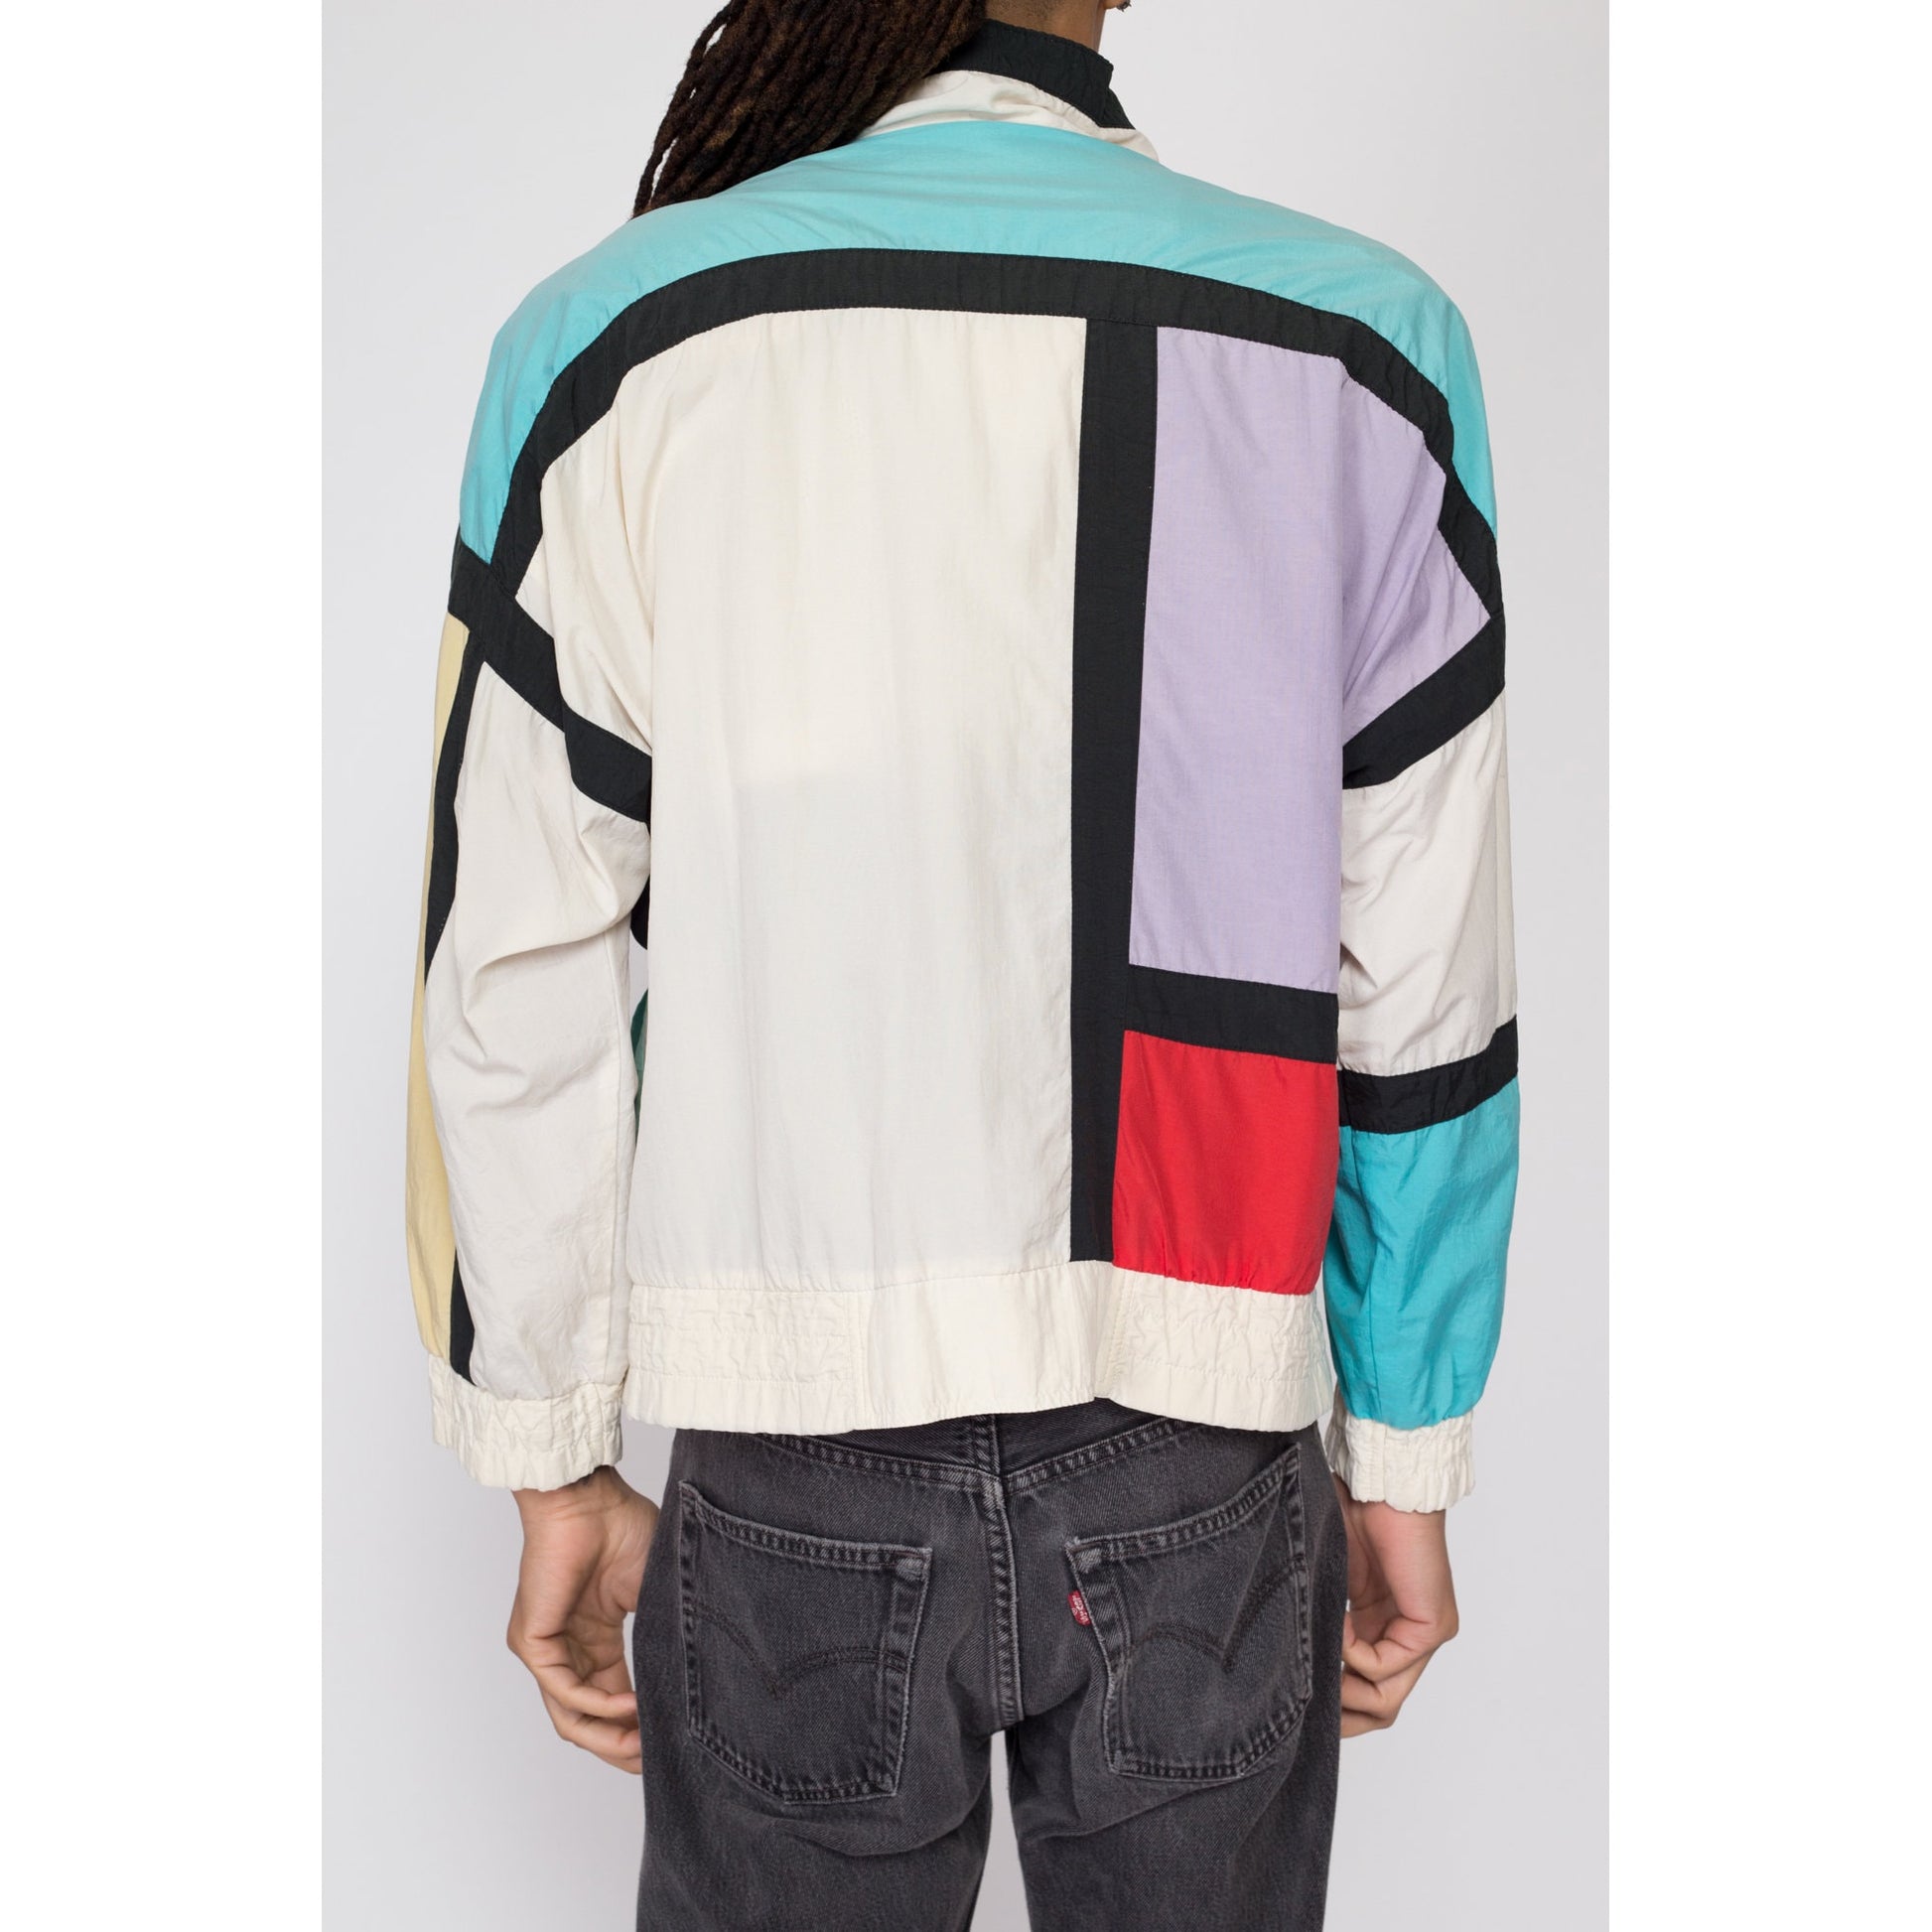 Medium 80s Mondrian Color Block Windbreaker | Retro Vintage Colorful Zip Up Jacket